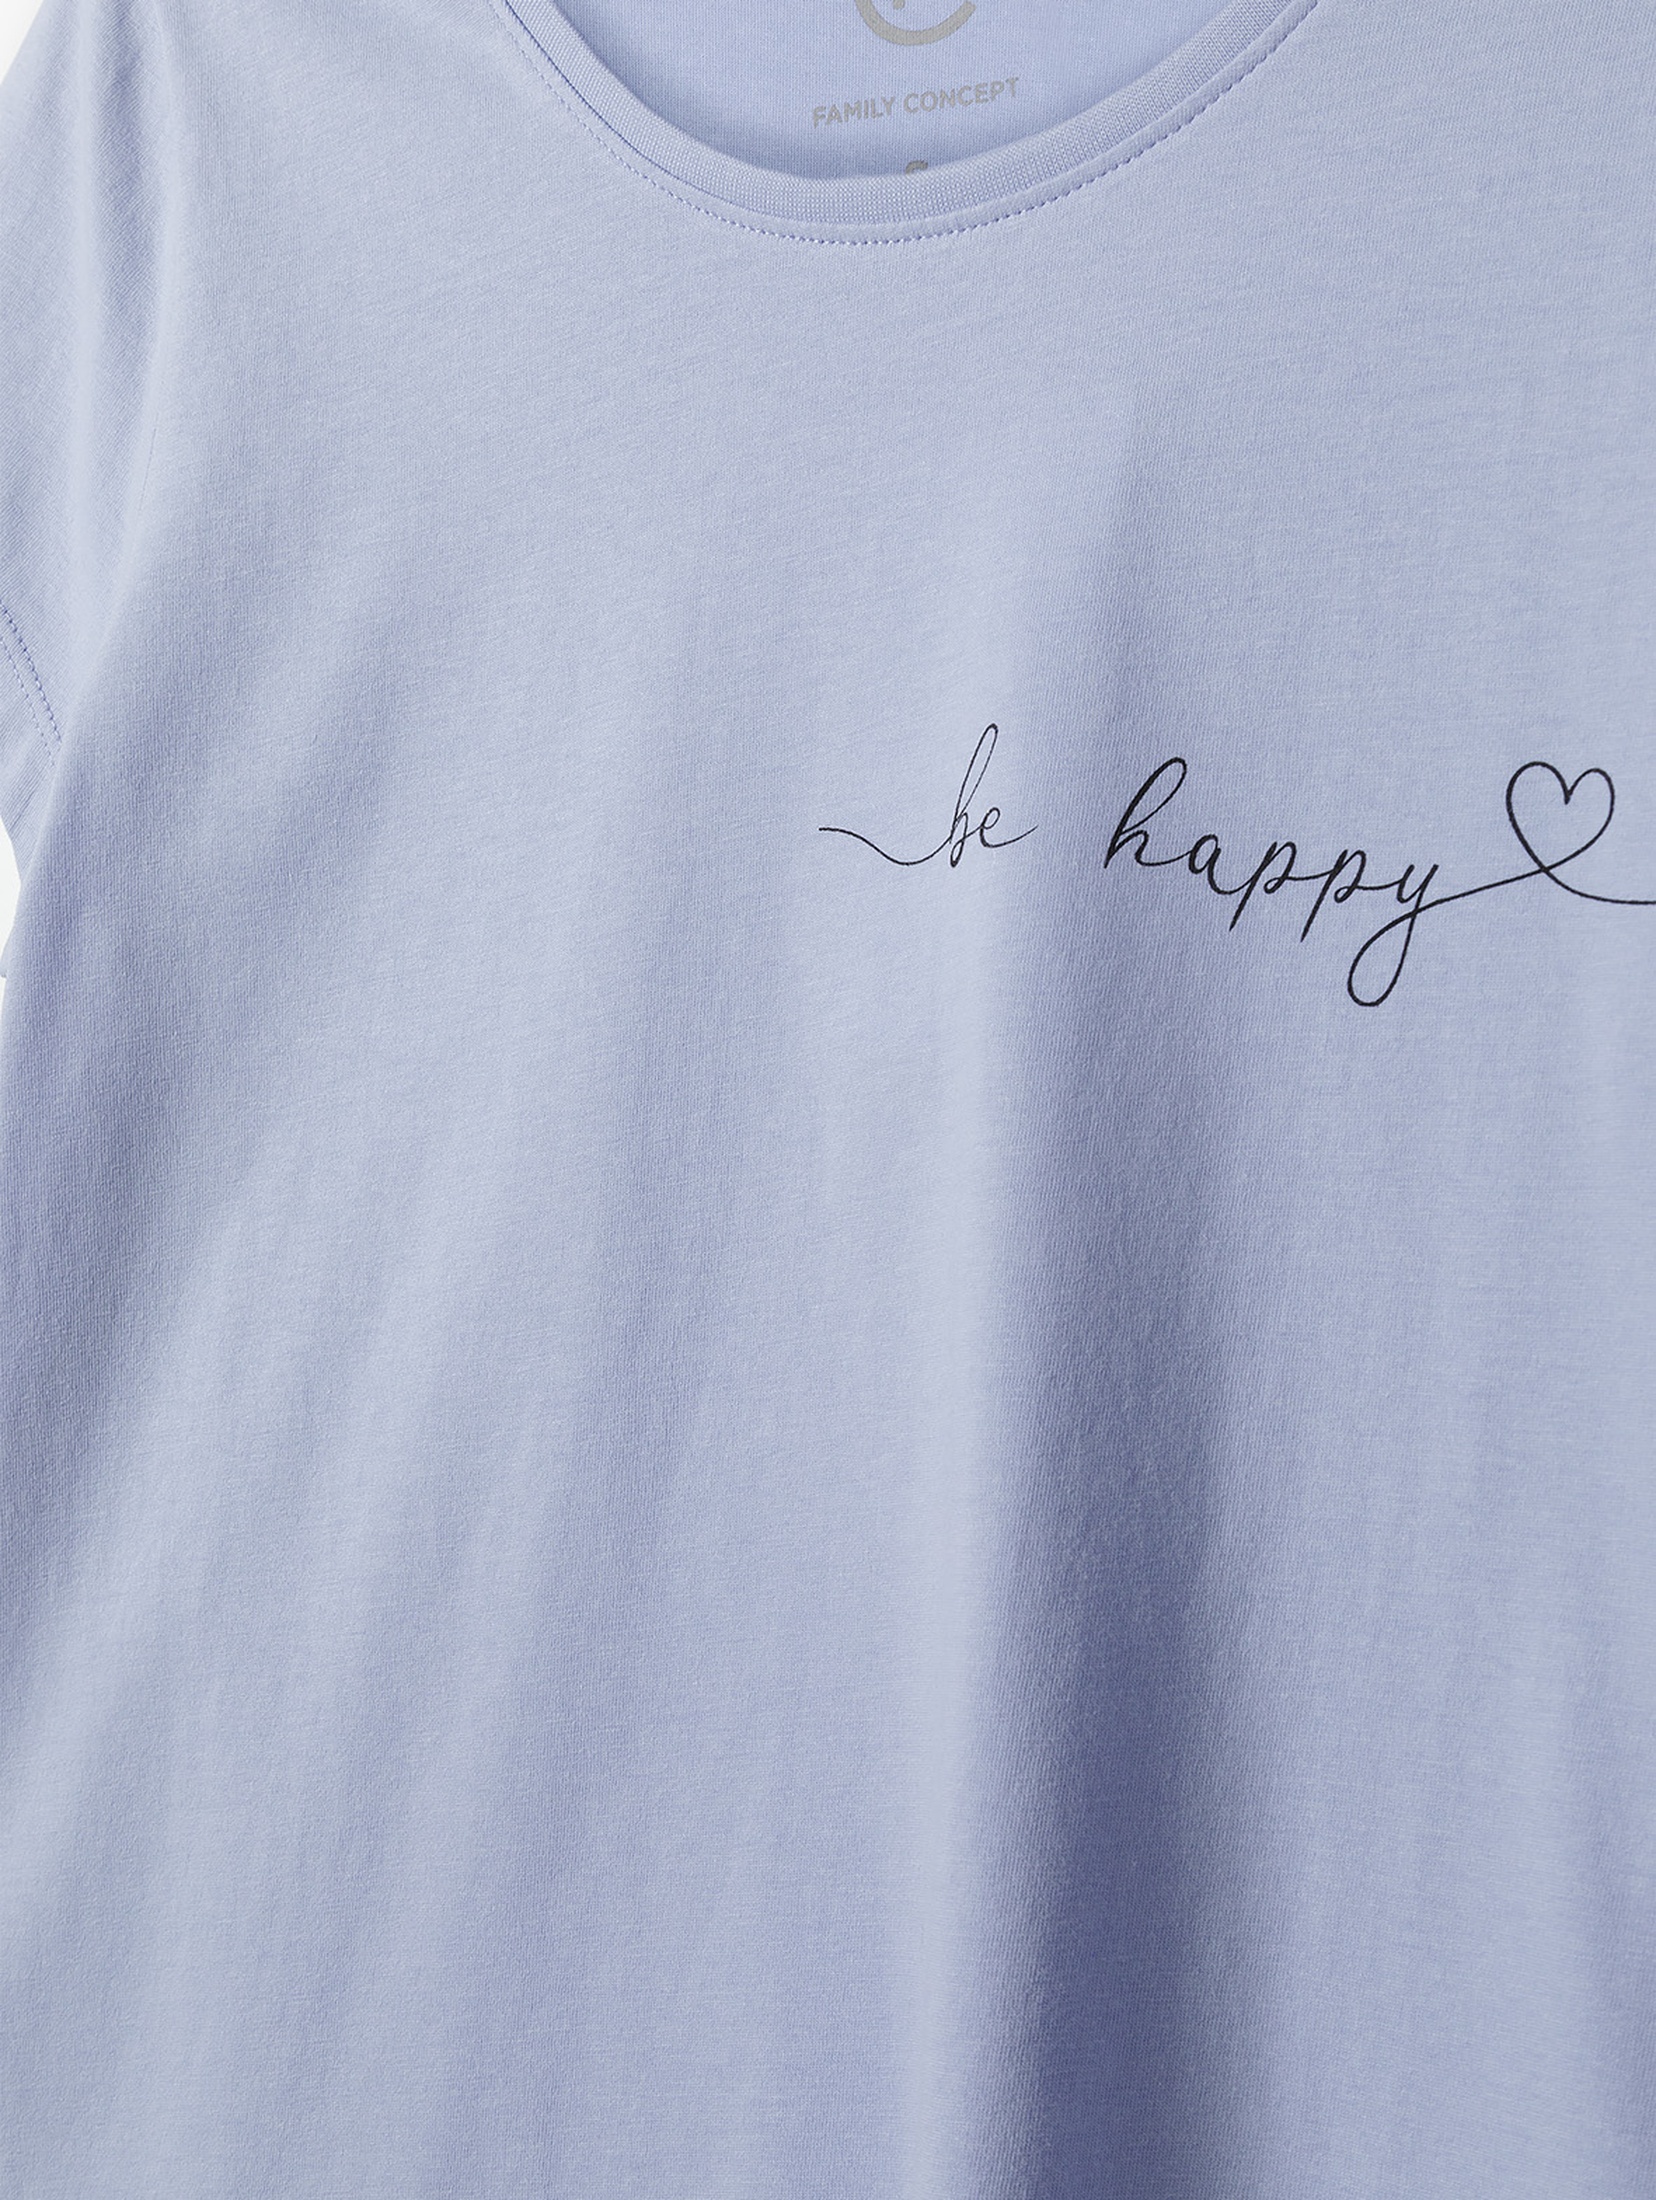 T-shirt damski bawełniany niebieski z napisem - Be happy